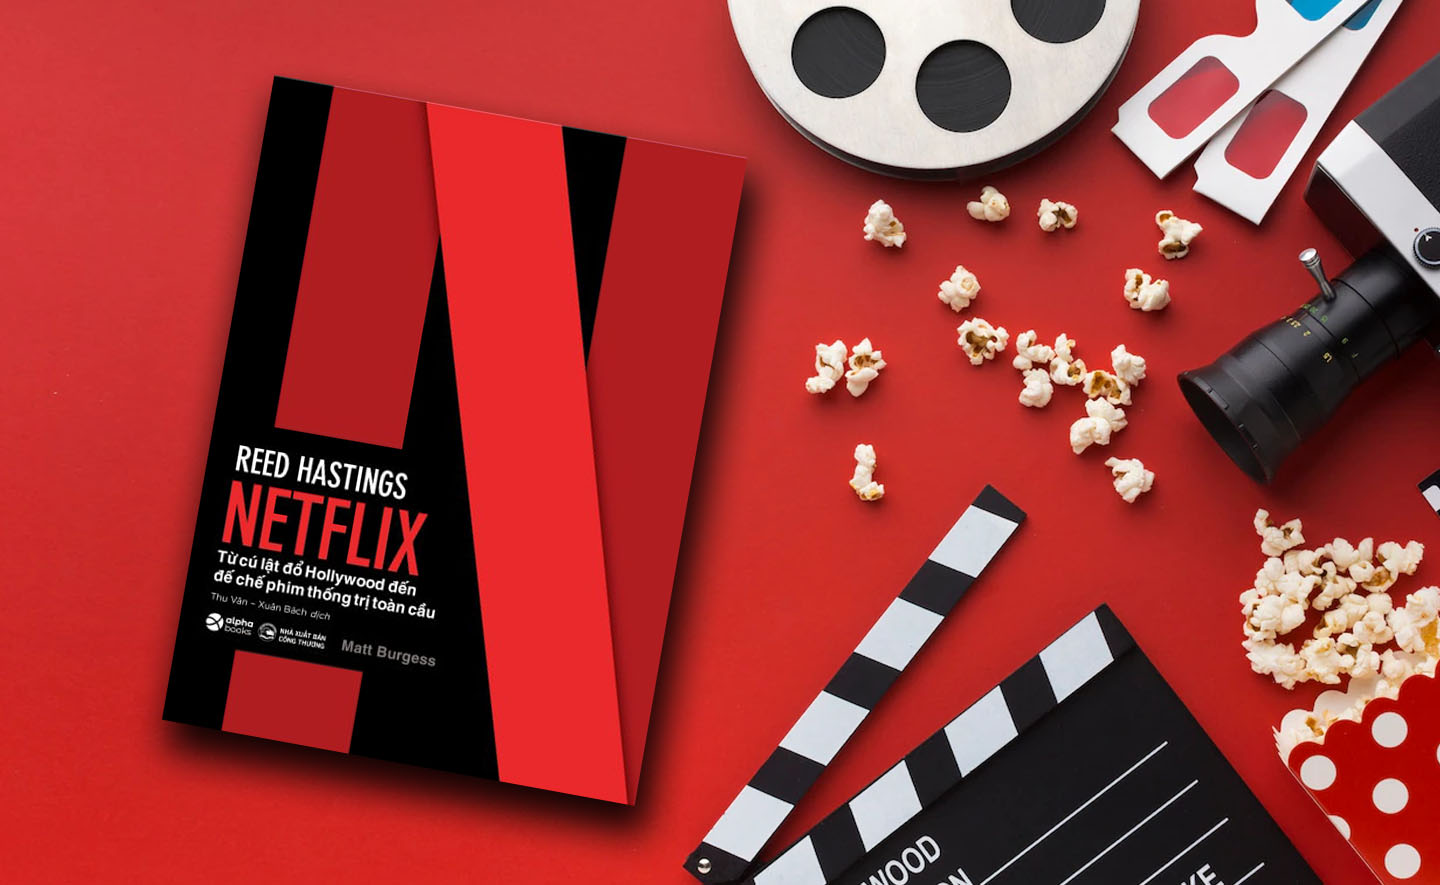 Netflix - Từ cú lật đổ Hollywood  đến đế chế phim thống trị toàn cầu 